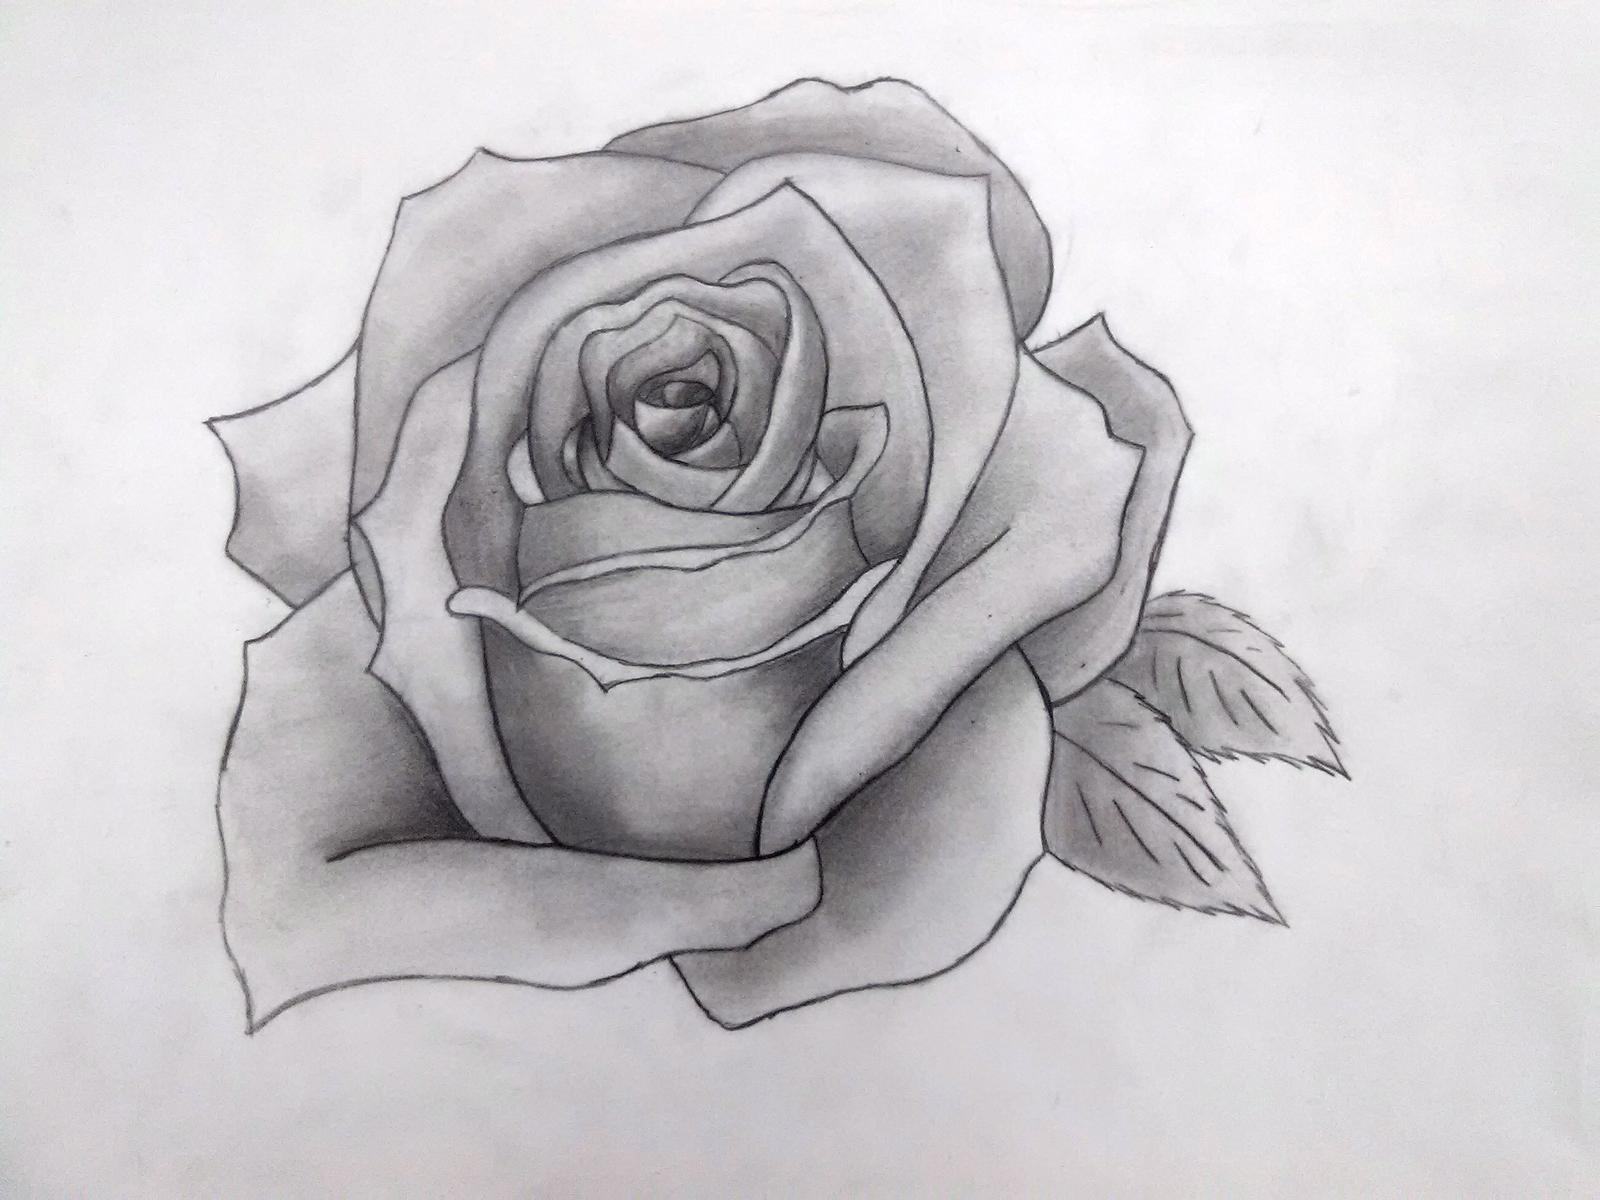 Tranh vẽ hoa hồng bằng bút chì đẹp nhất